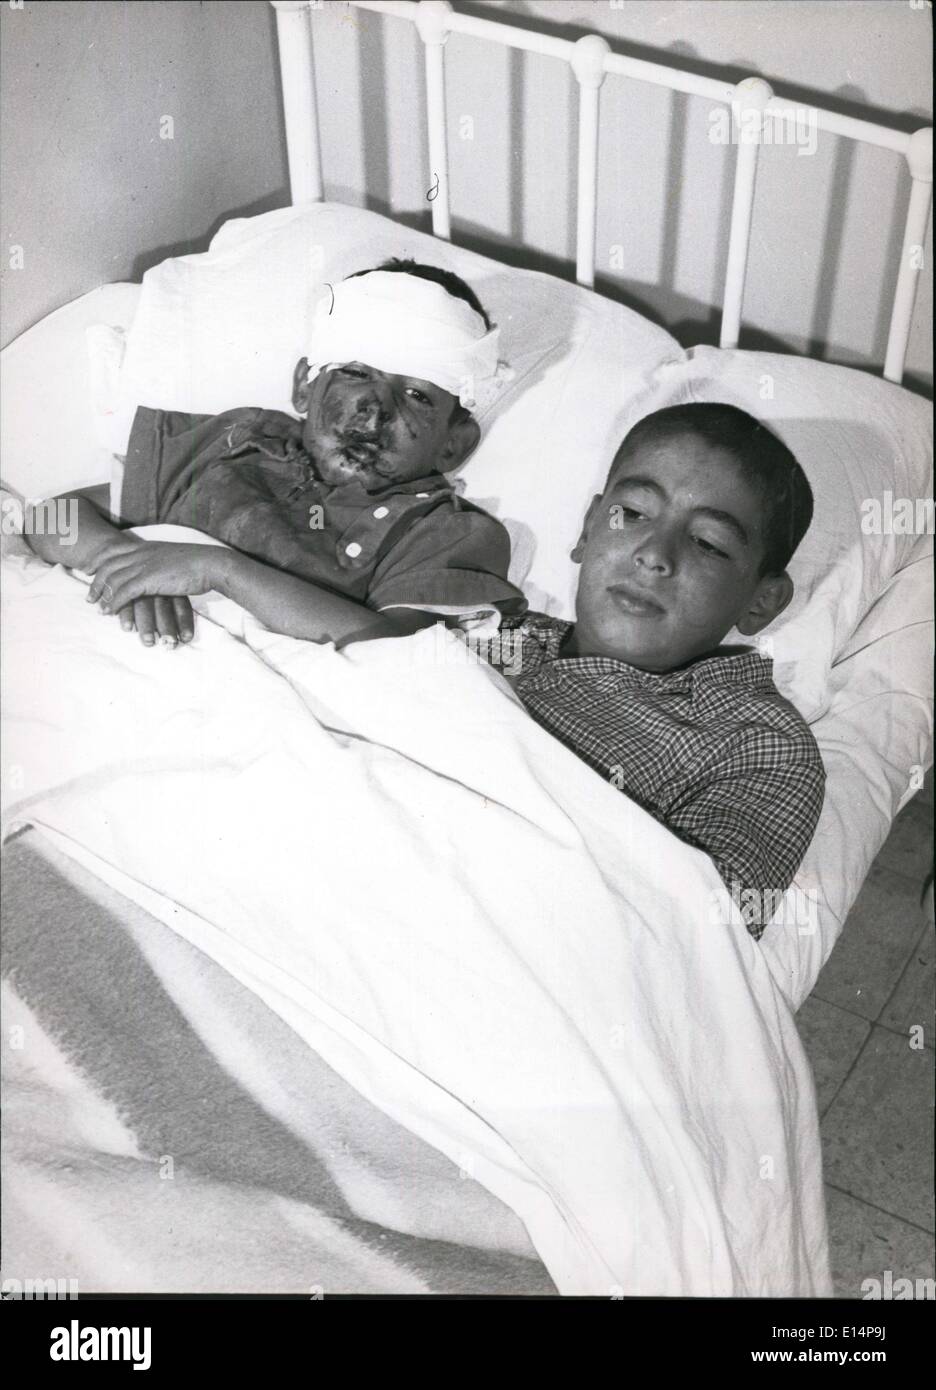 Abril 12, 2012 - Chicos lesionados recuperarse en la cama de un Hospital Foto de stock